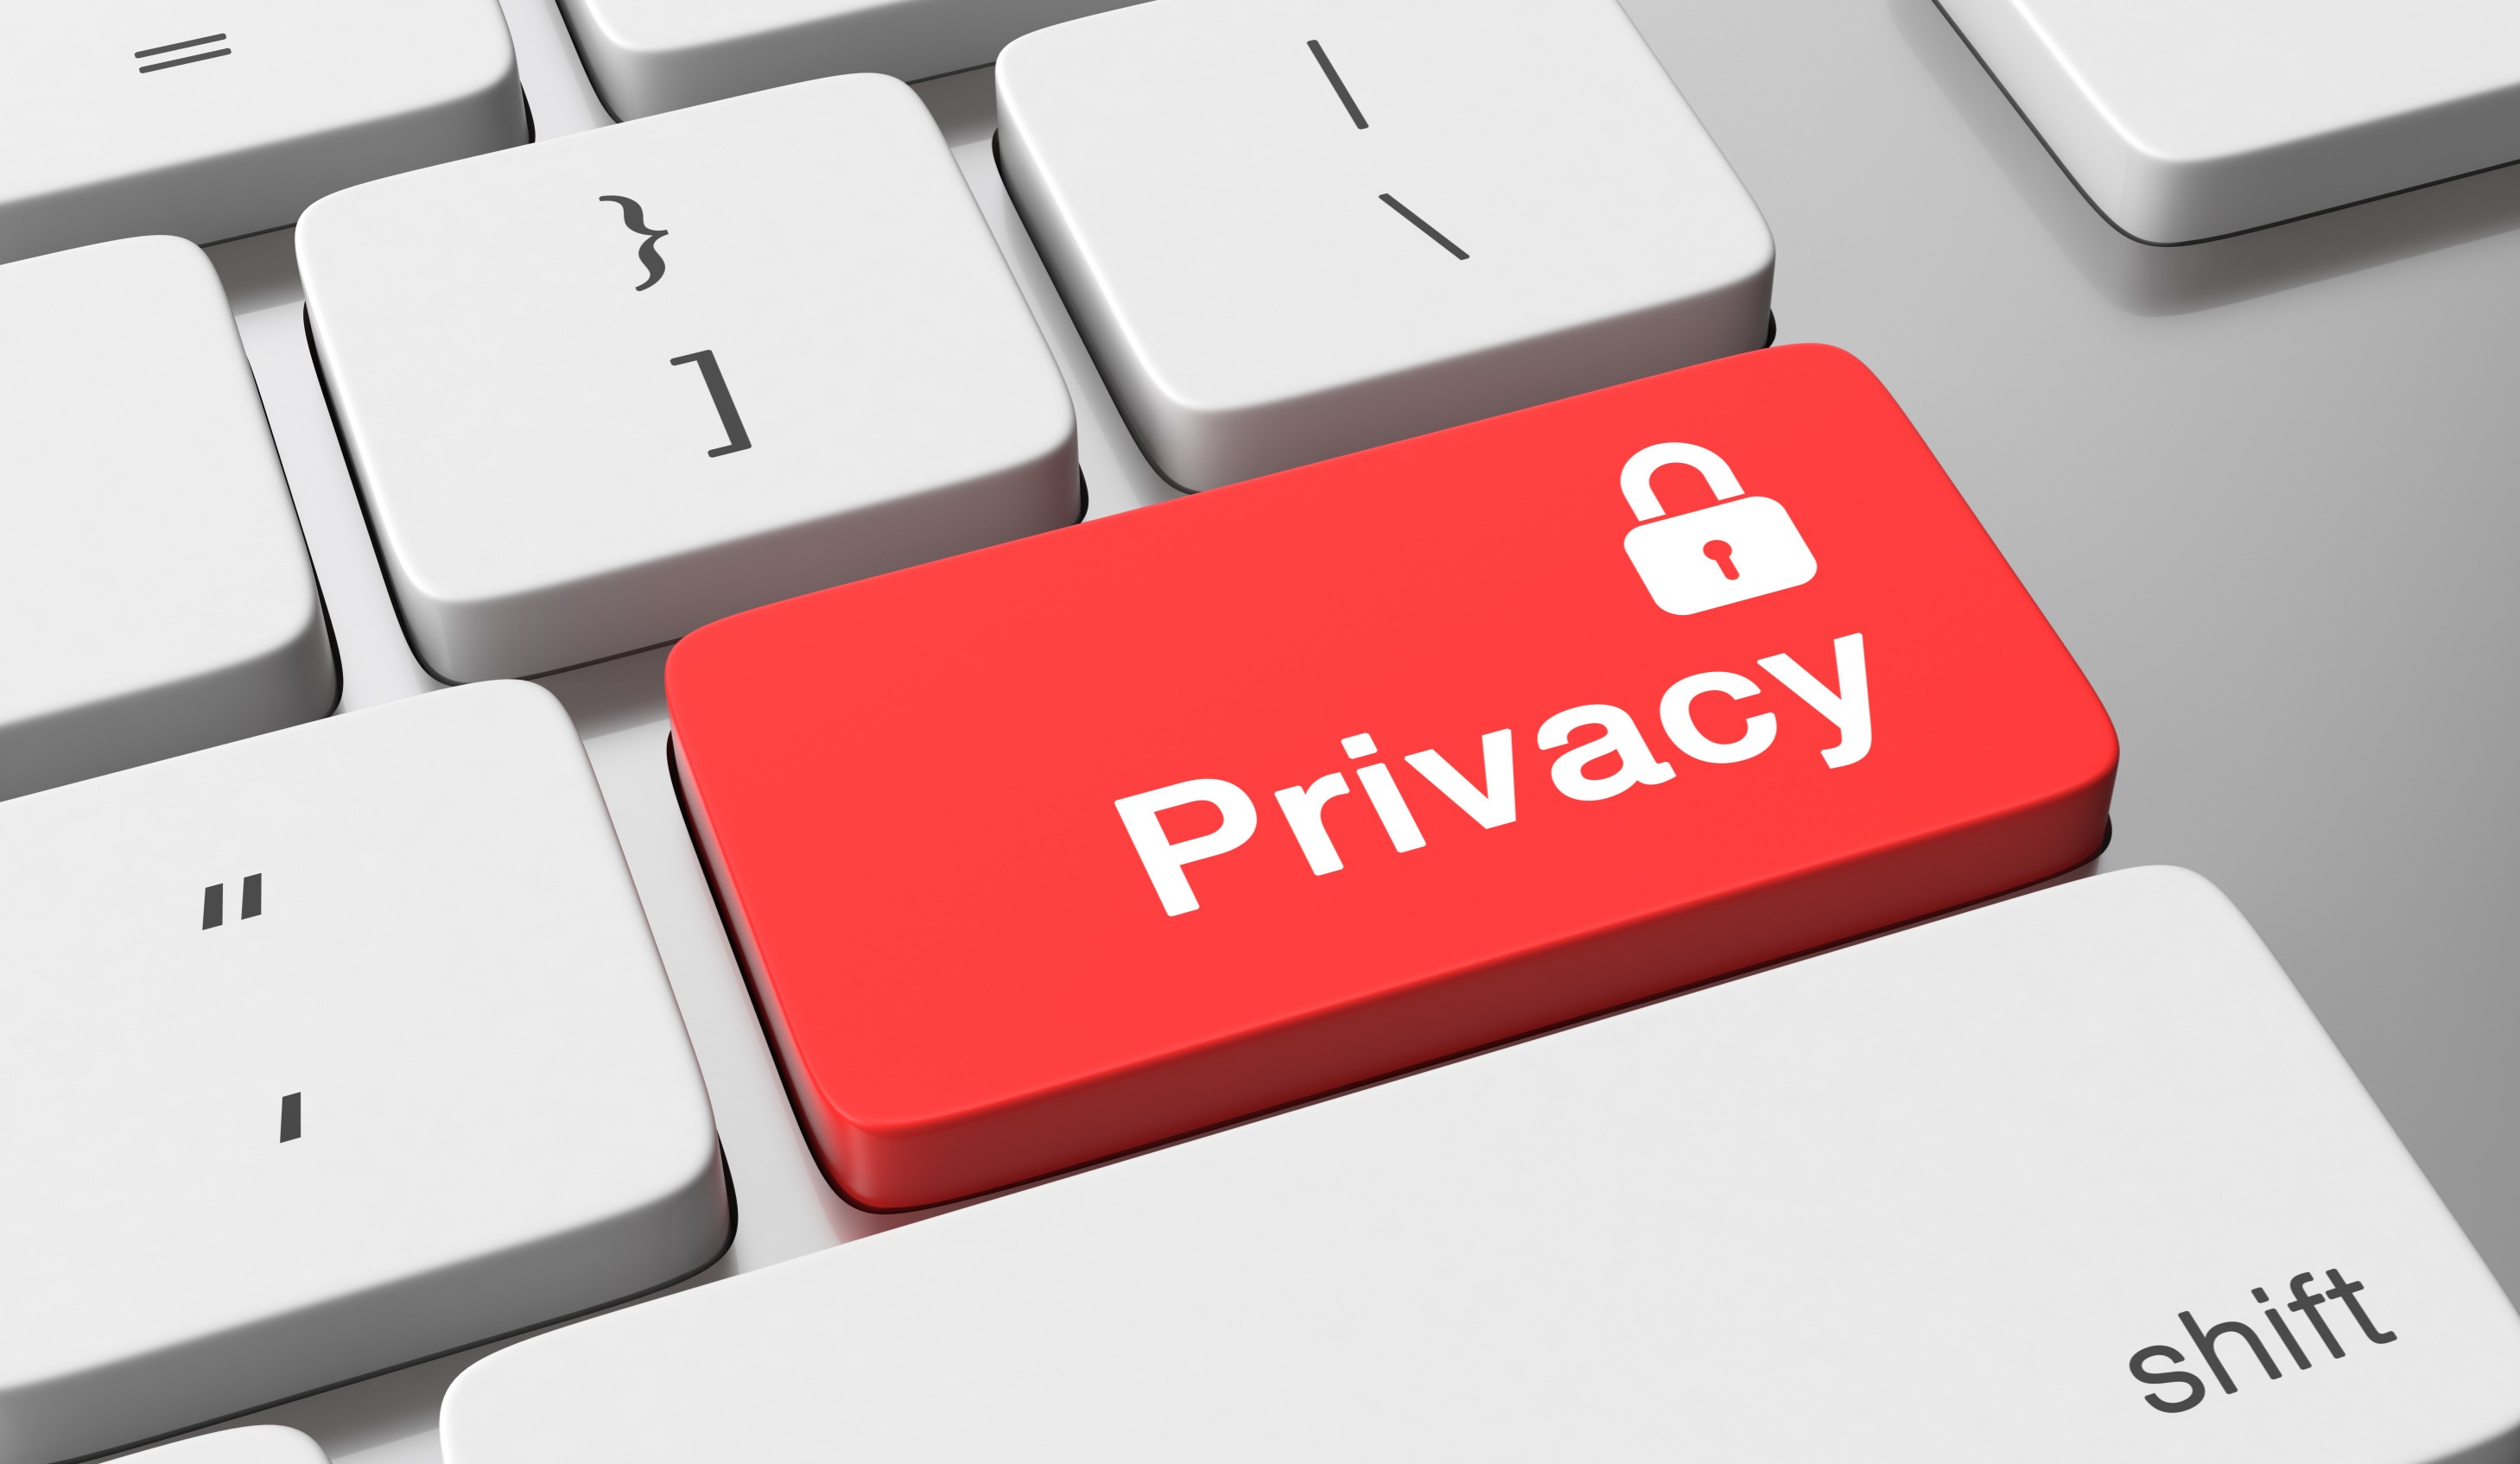 隐私协议如何利用区块链技术解决数据安全和隐私问题？